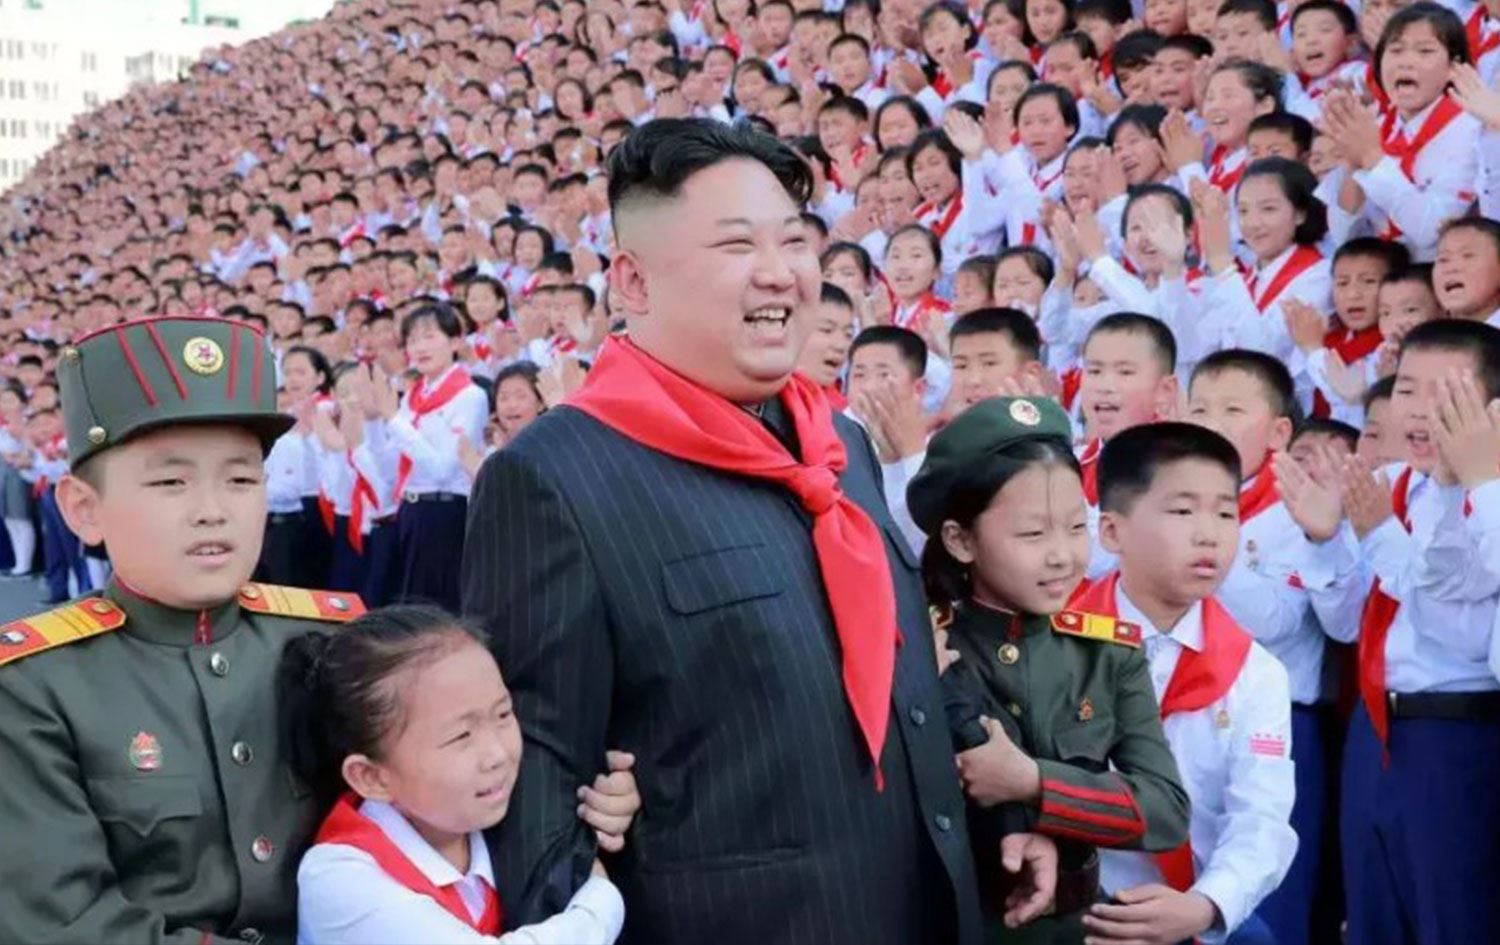 Kuzey Kore'nin “Can Baba” (Friendly Father) isimli propaganda şarkısı sosyal medyada viral oldu